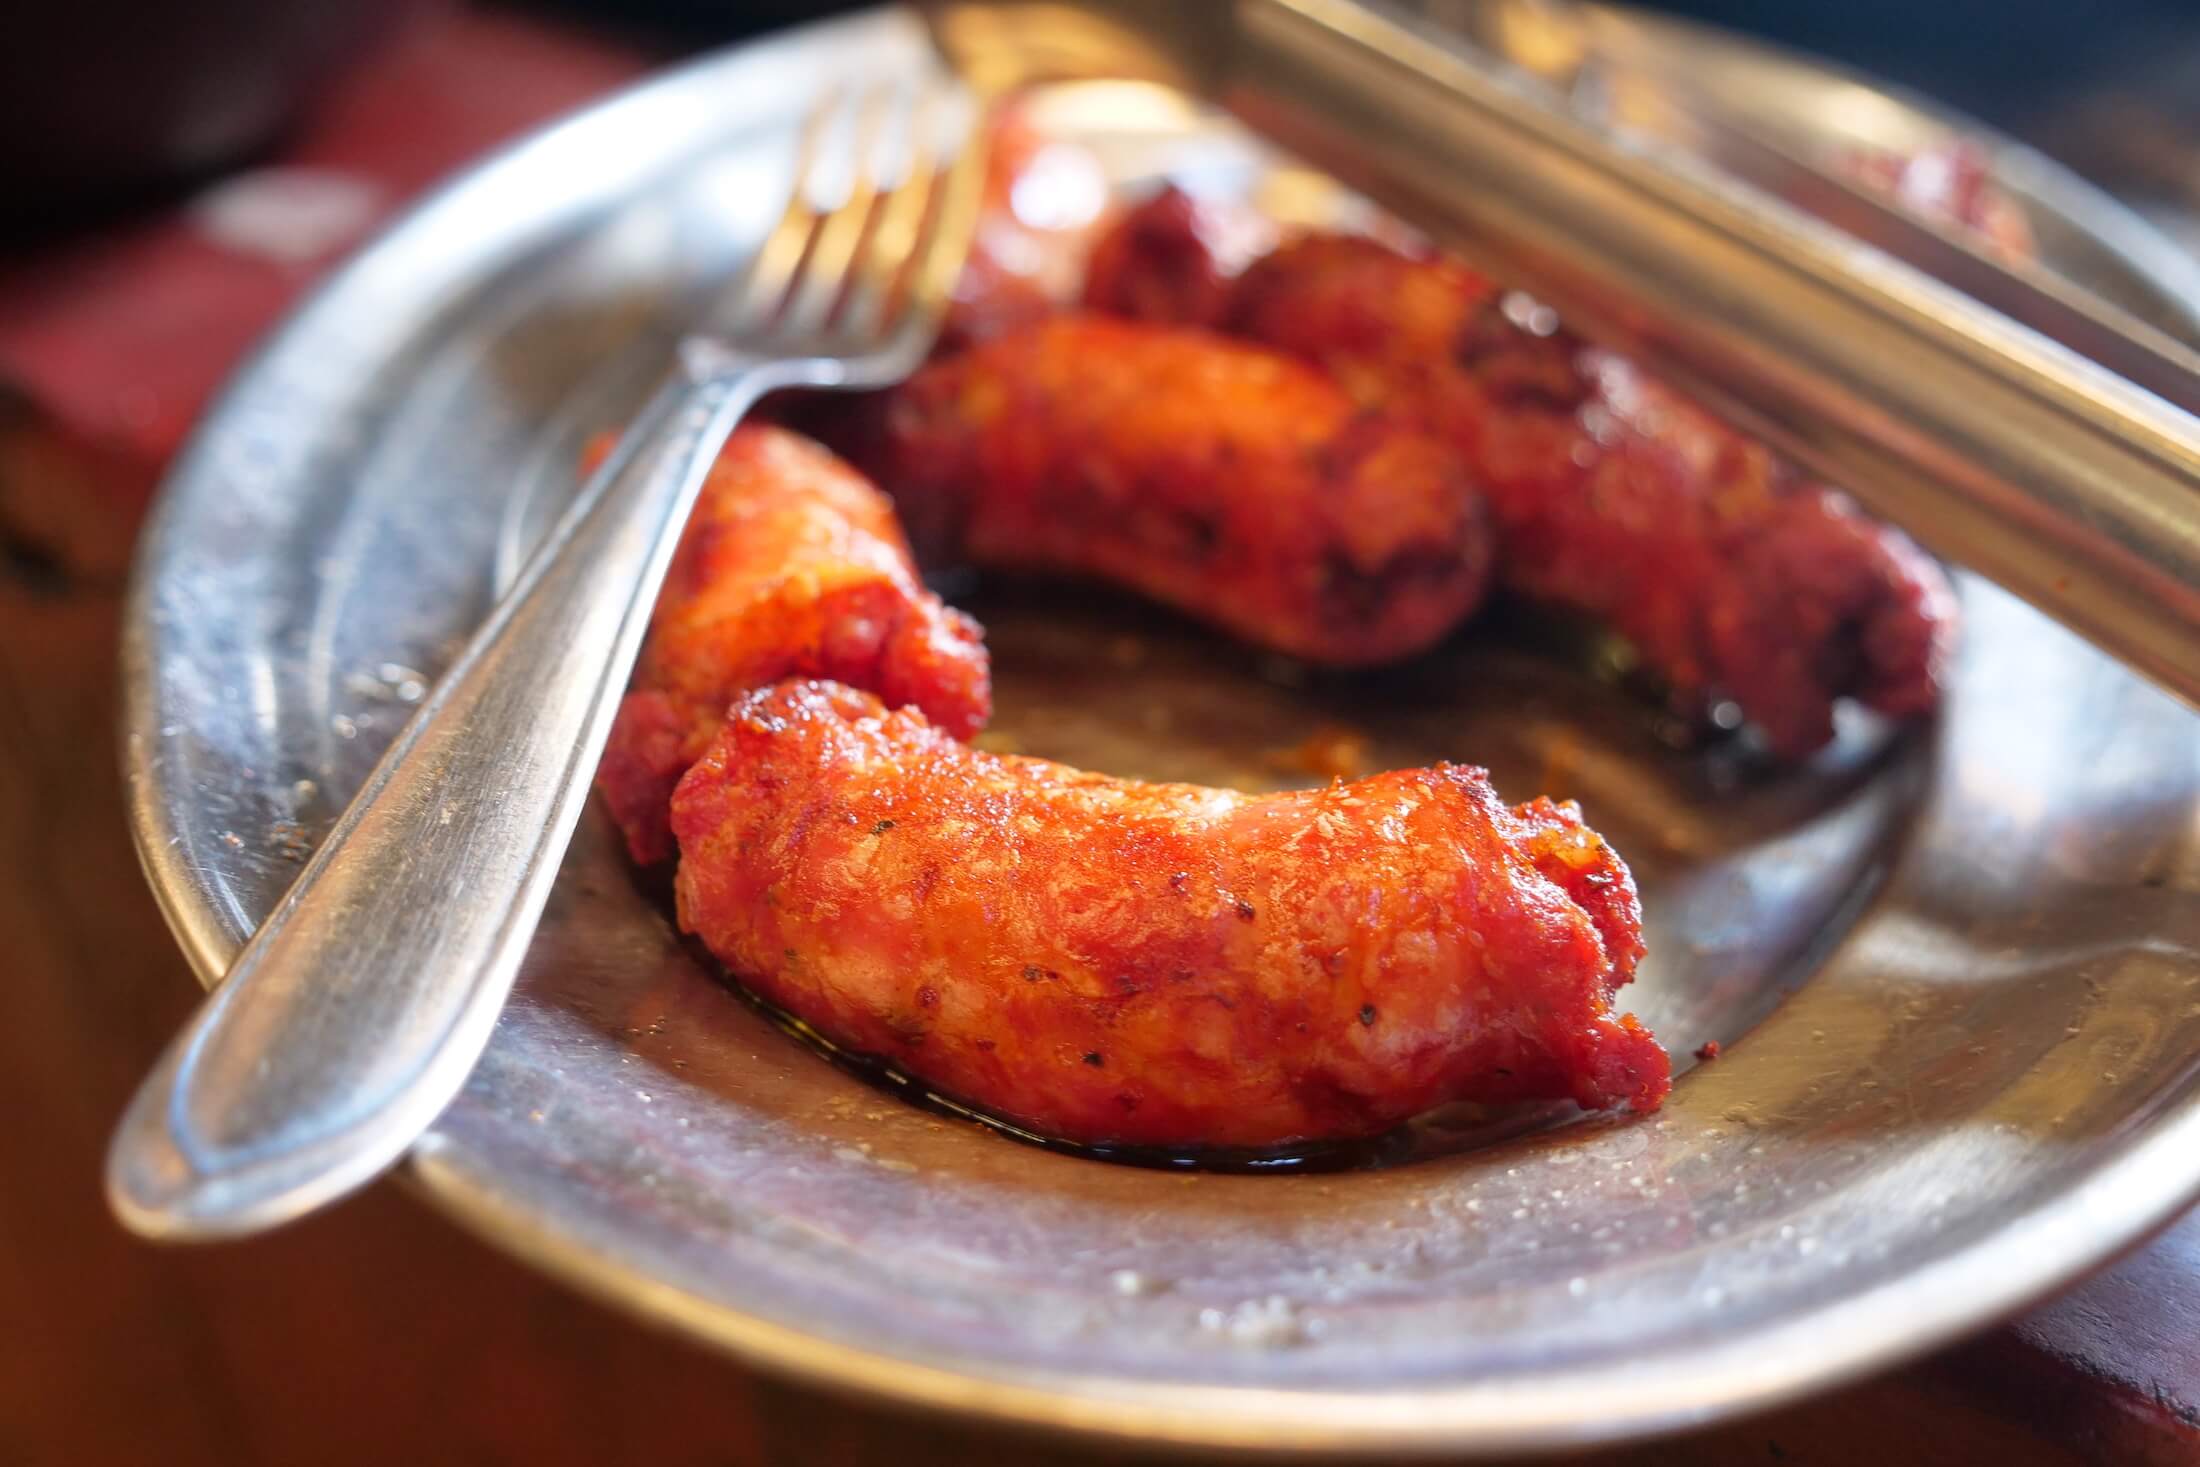 chunky porky sausage Linguiça in Brazil